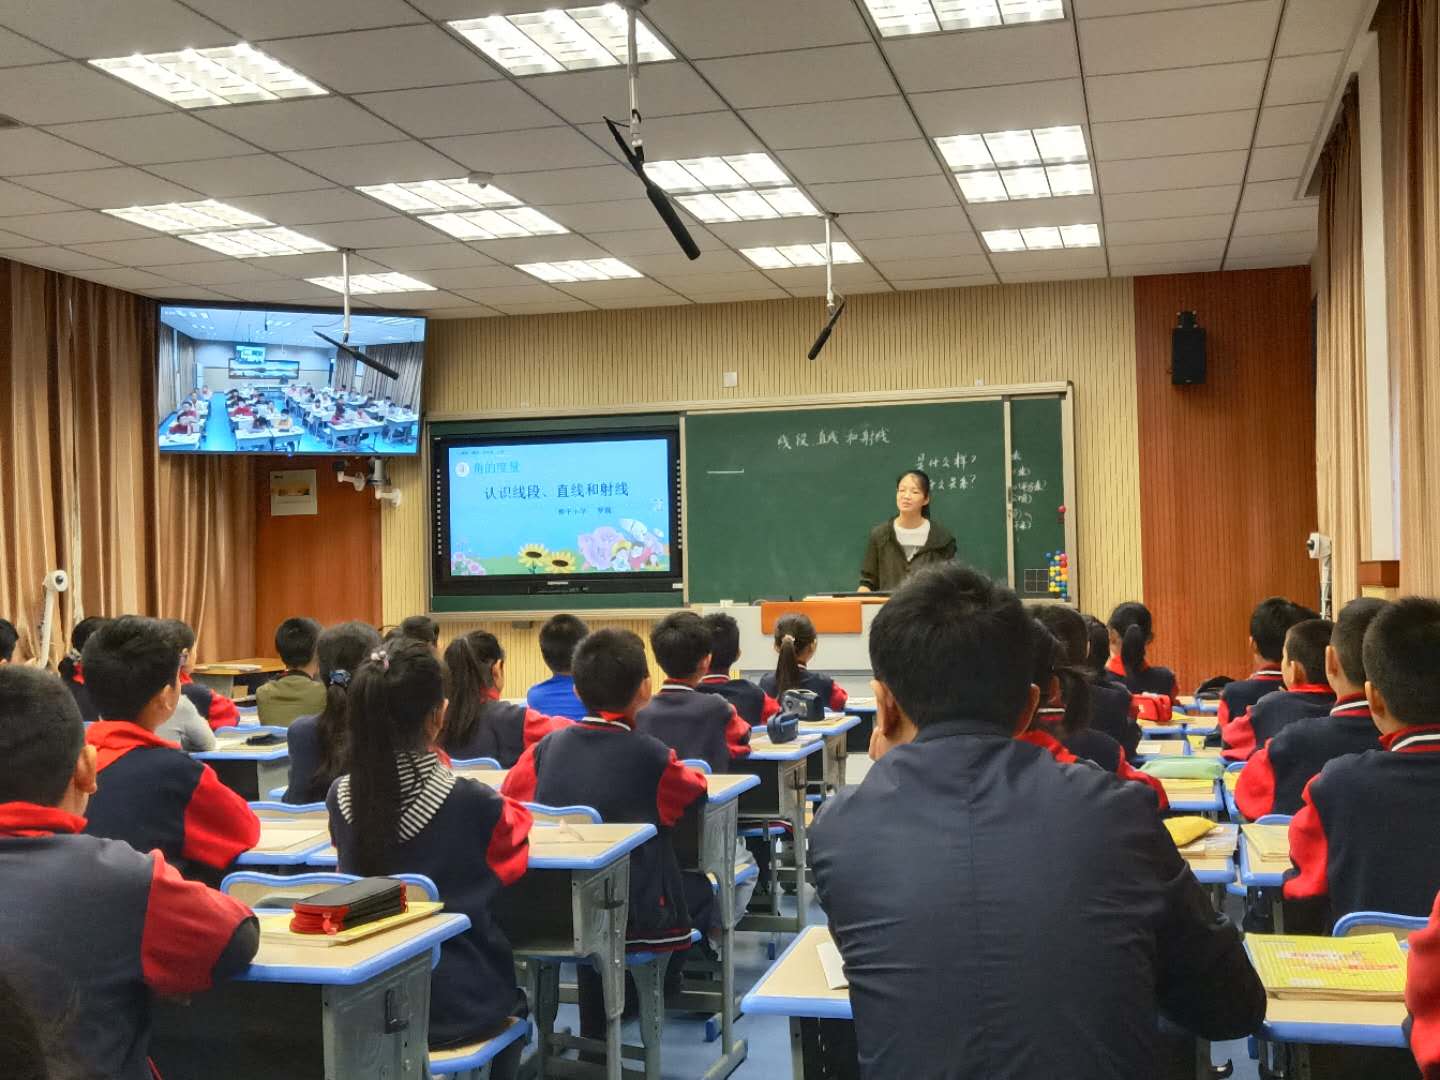 长兴县和平镇中心小学:互联网 义务教育之同步课堂